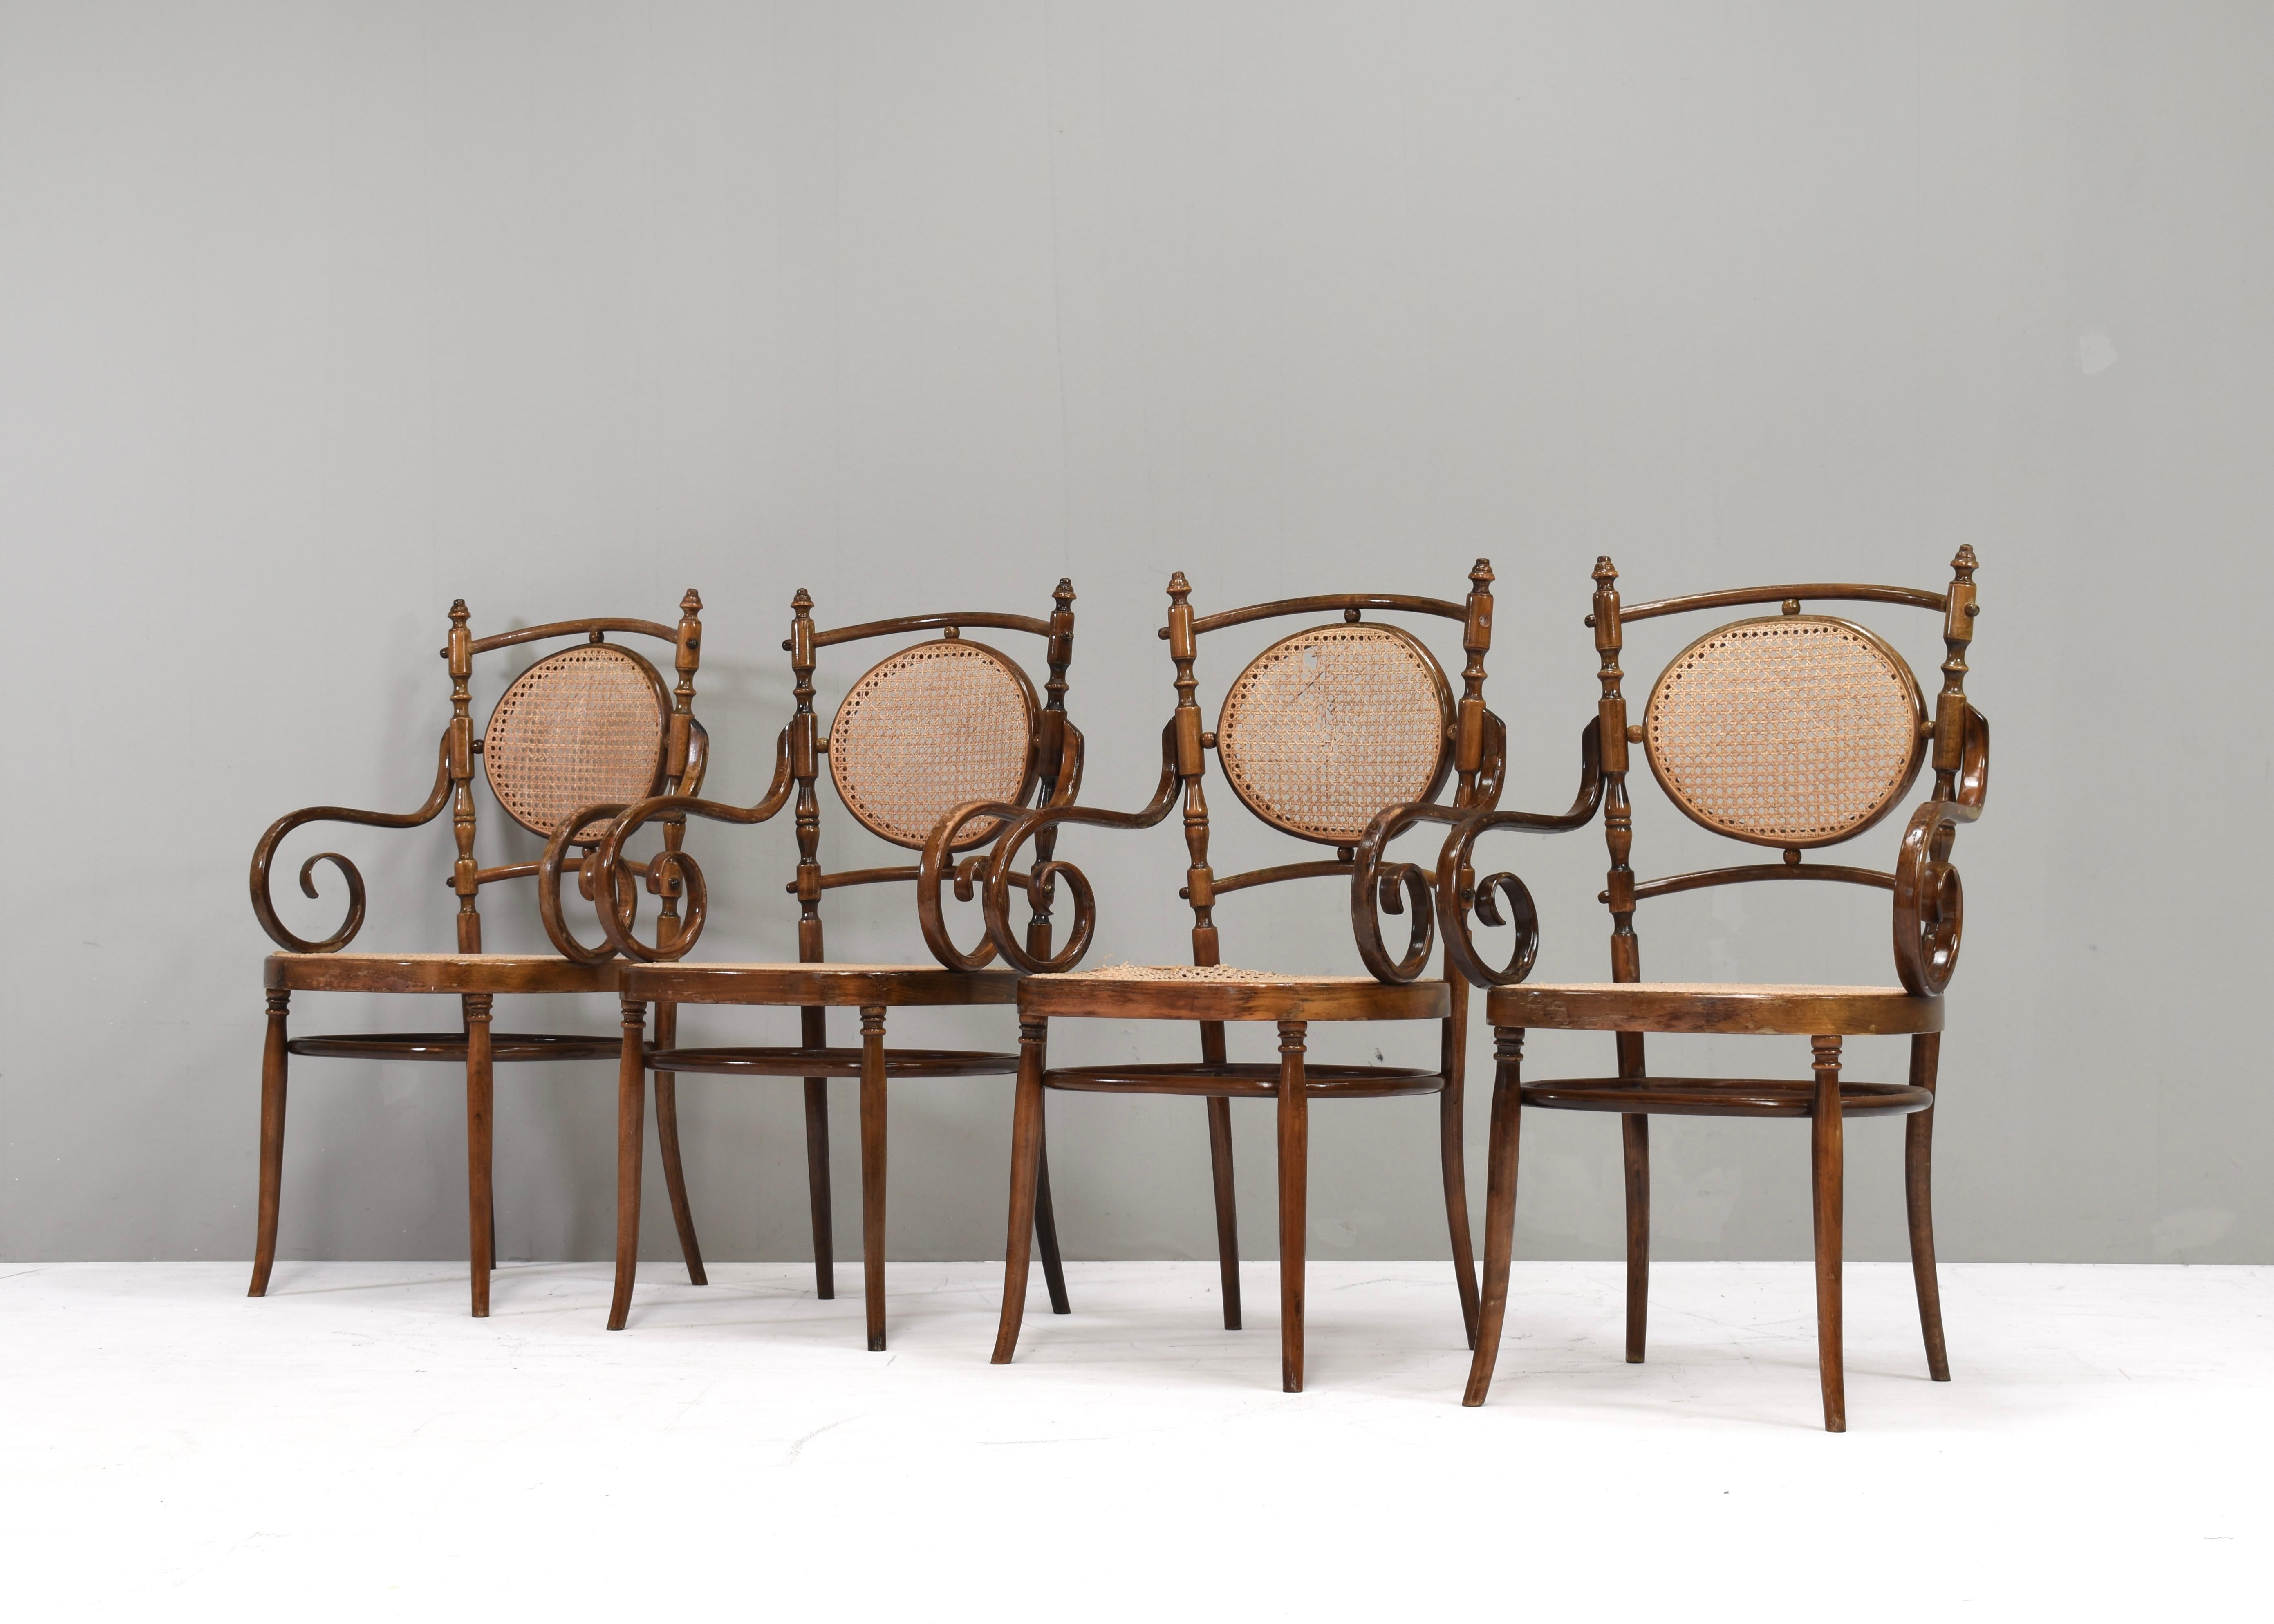 Ensemble de 4 fauteuils de salle à manger n° 17 en bois courbé et canne 'long john' et table conçus par Michael Thonet. Conçu à l'origine dans les années 1860 et produit par Thonet au 20e siècle dans de multiples usines.
Taille :
chaises :